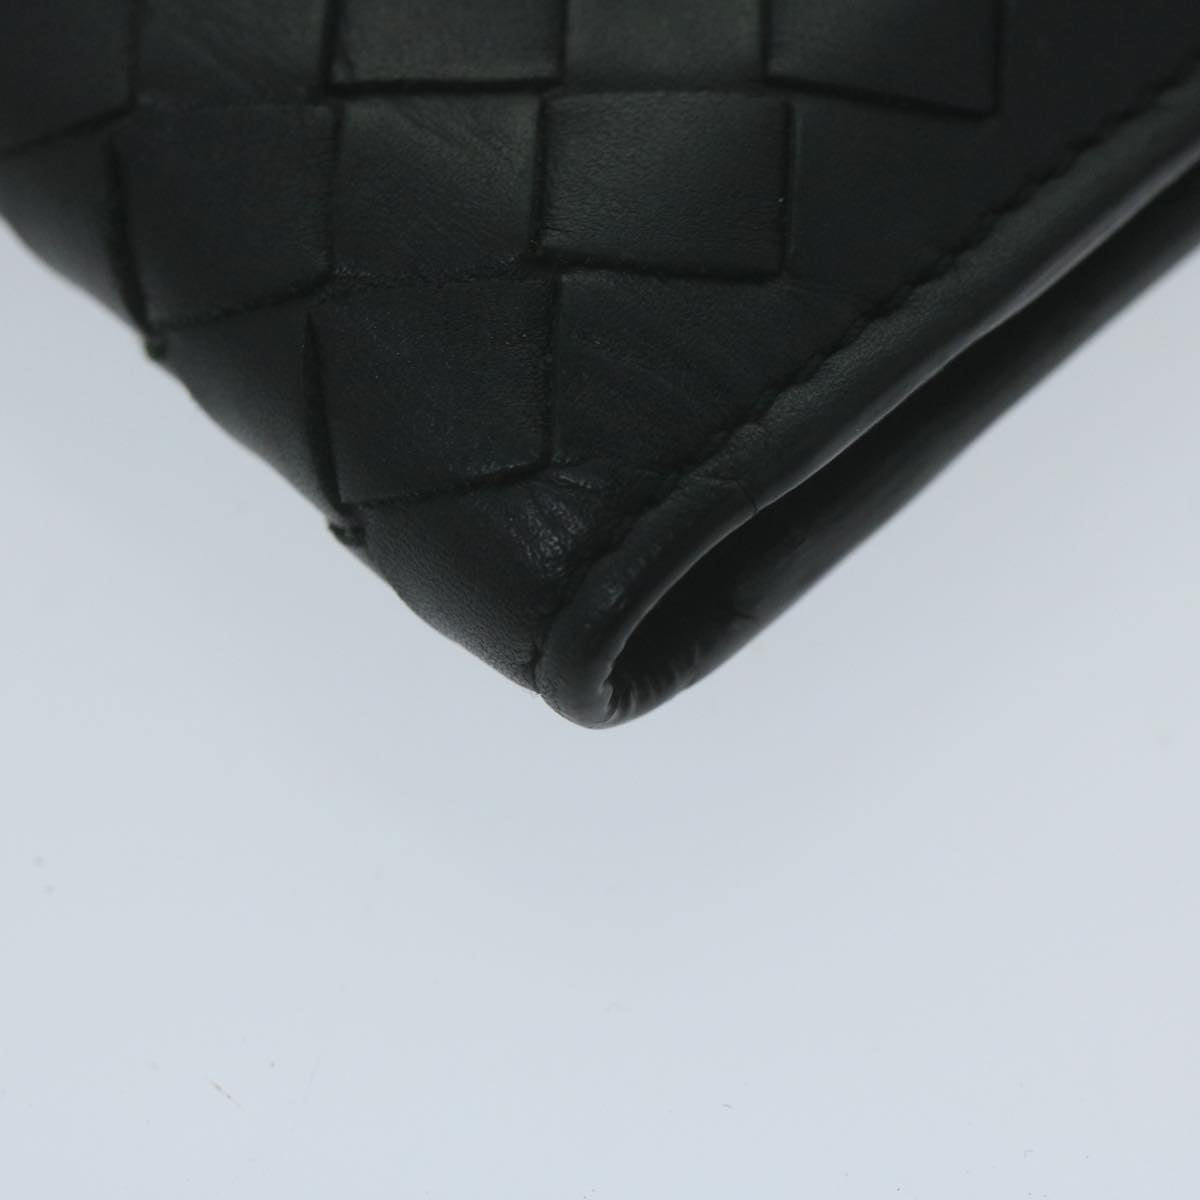 BOTTEGA VENETA INTRECCIATO Card Case Leather Black Auth yk10559